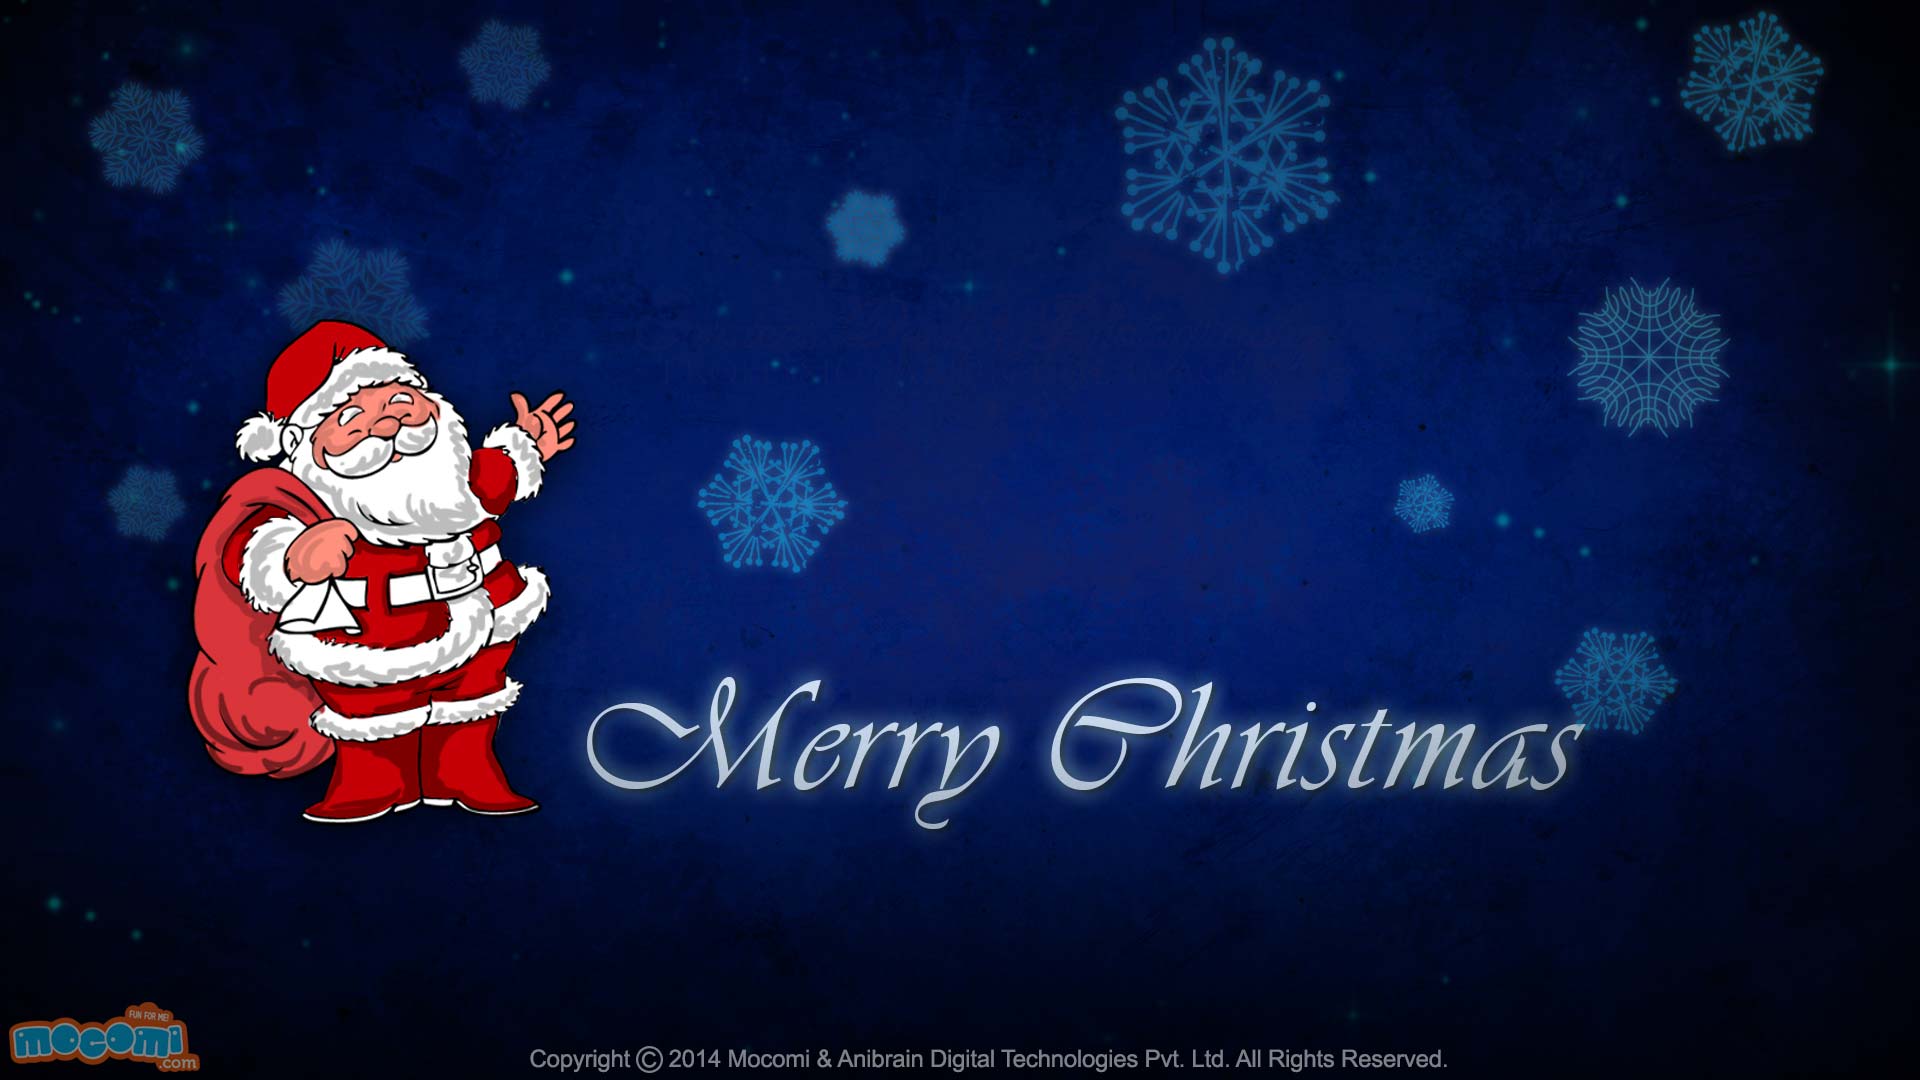 Merry Christmas Happy Santa Desktop Wallpaper For Kids Moi